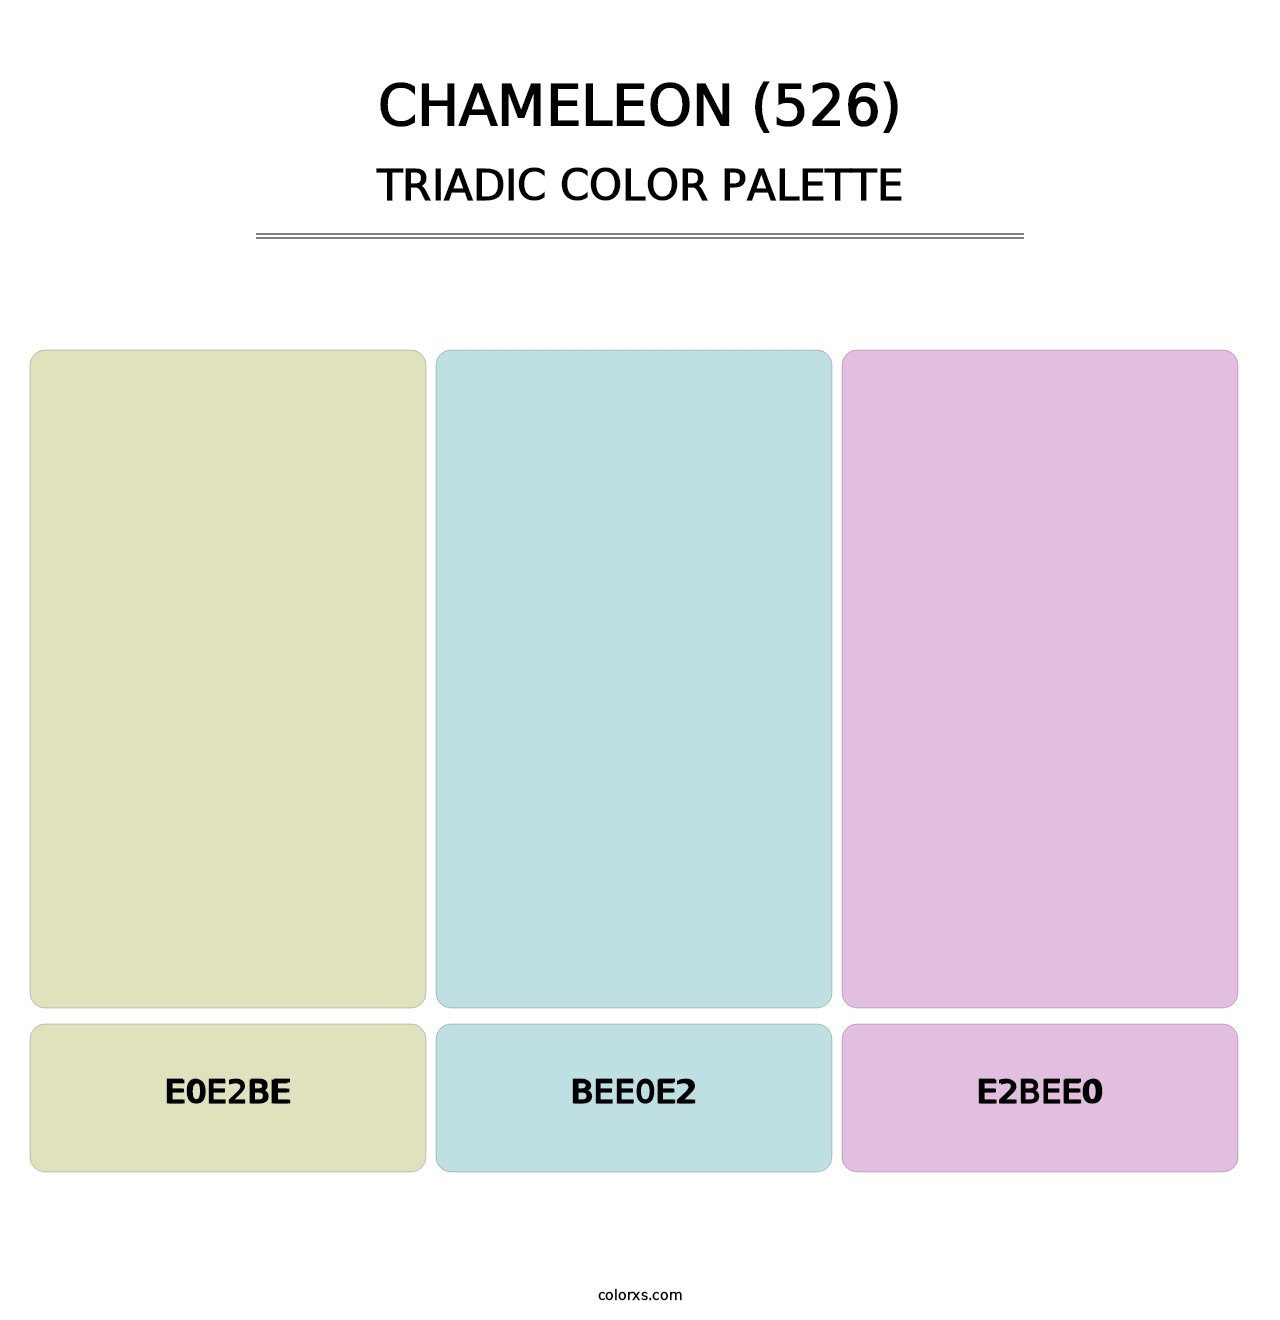 Chameleon (526) - Triadic Color Palette